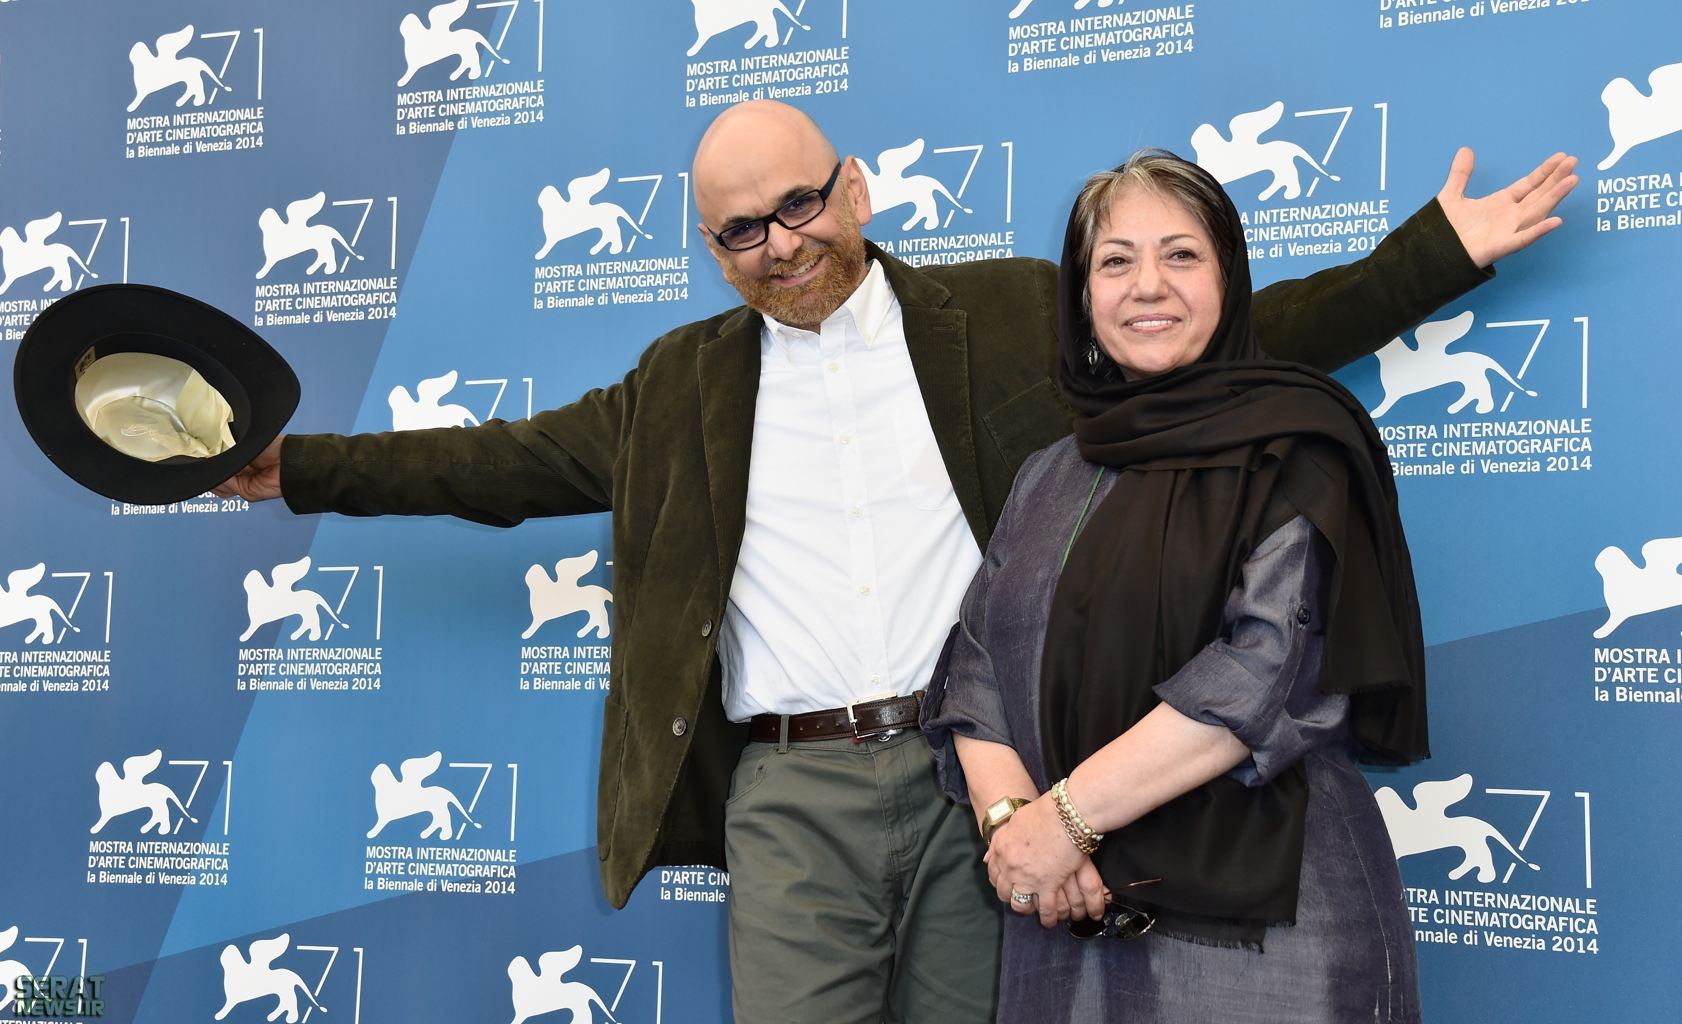 تغییرات در دولت ایران باعث ساخت فیلم